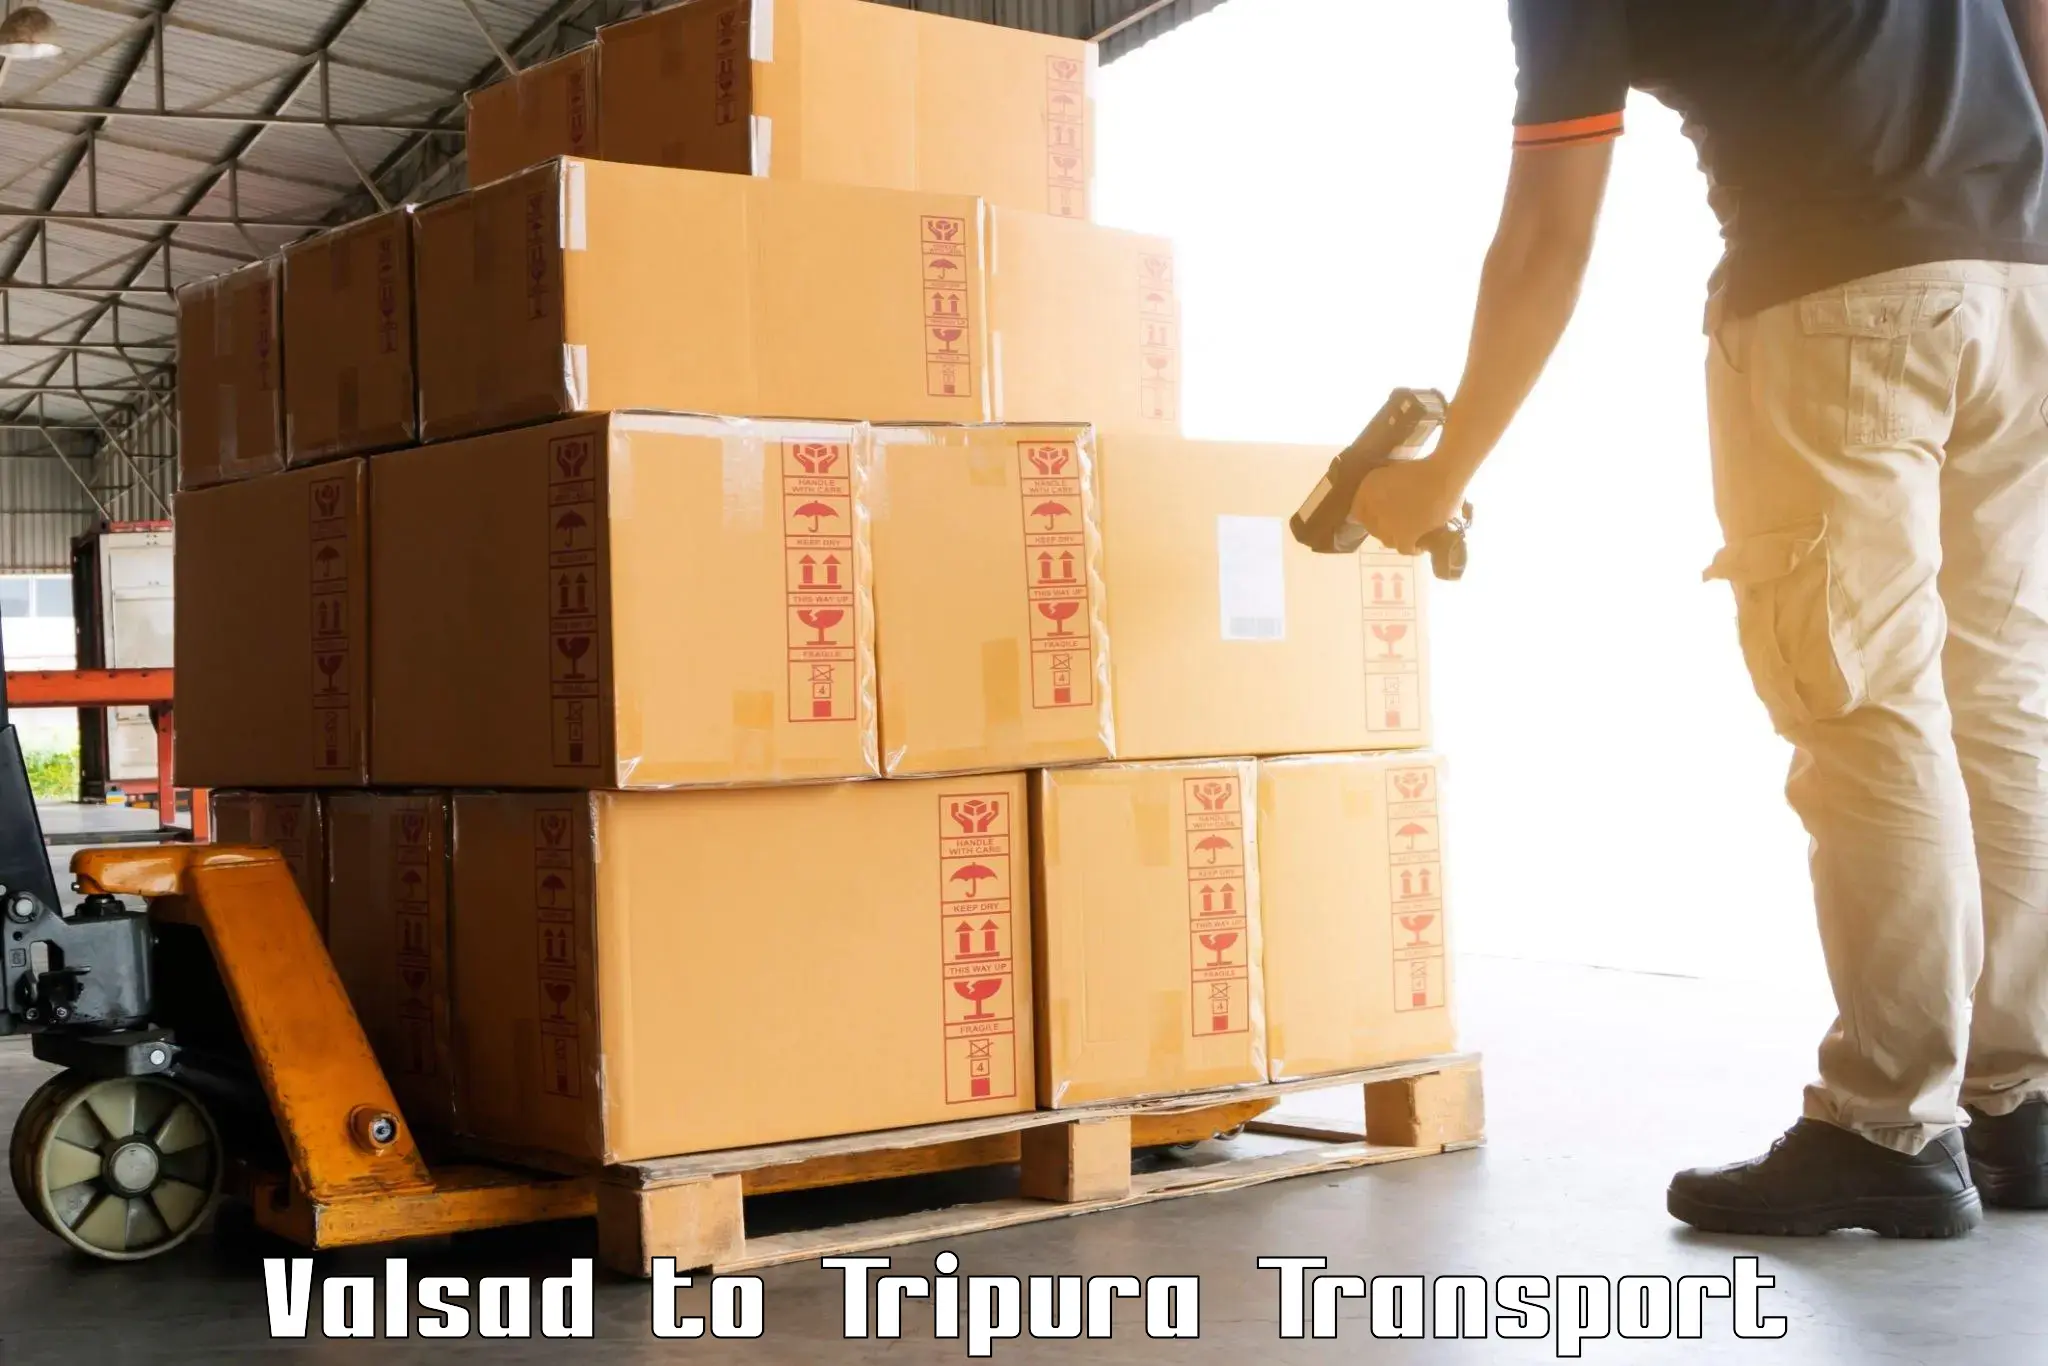 International cargo transportation services Valsad to Dharmanagar